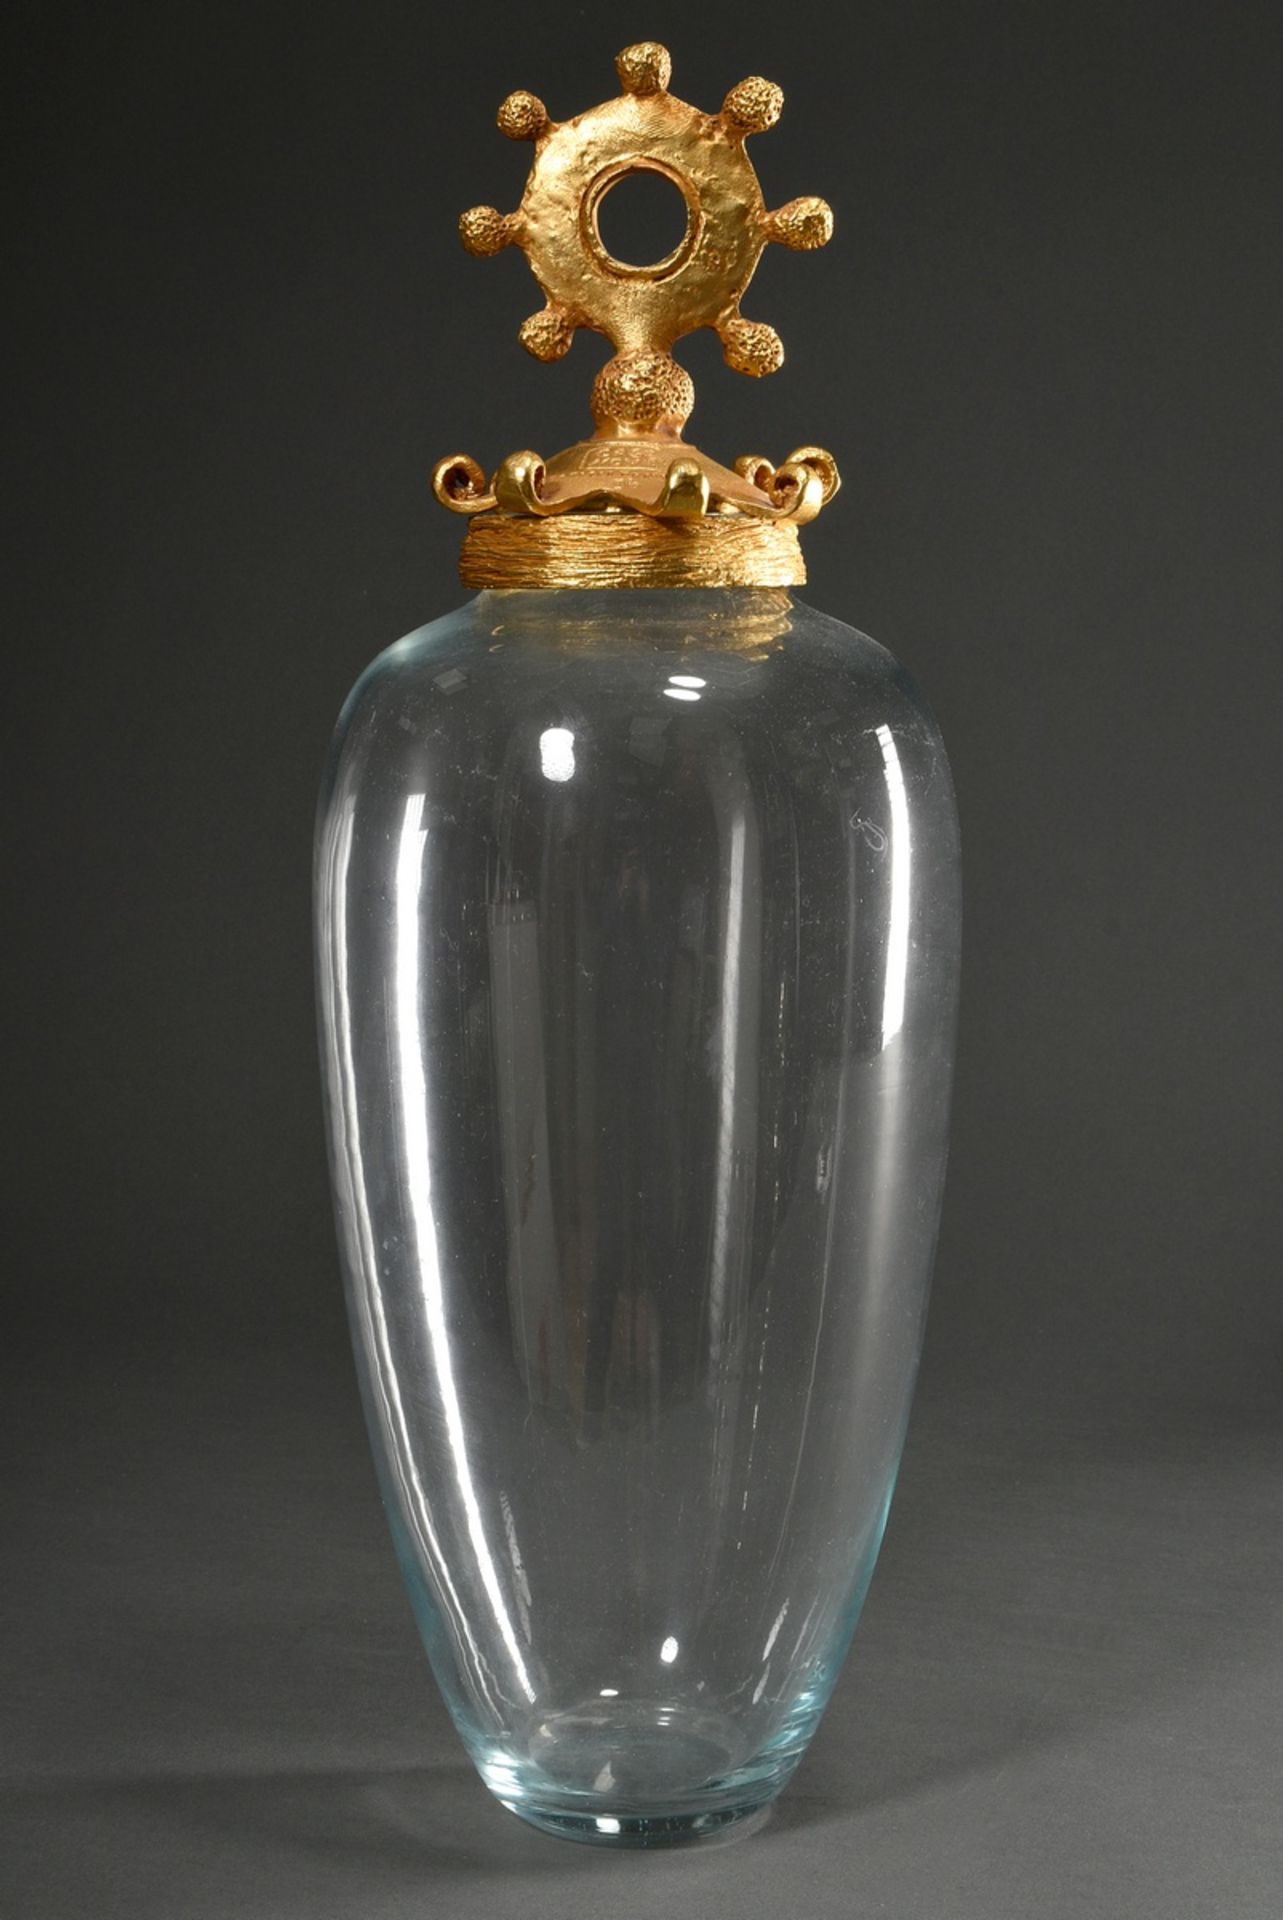 Casenove, Pierre (*1943) Kristall Vase in ovoider Form mit zoomorphem Deckel, Metall vergoldet, sig